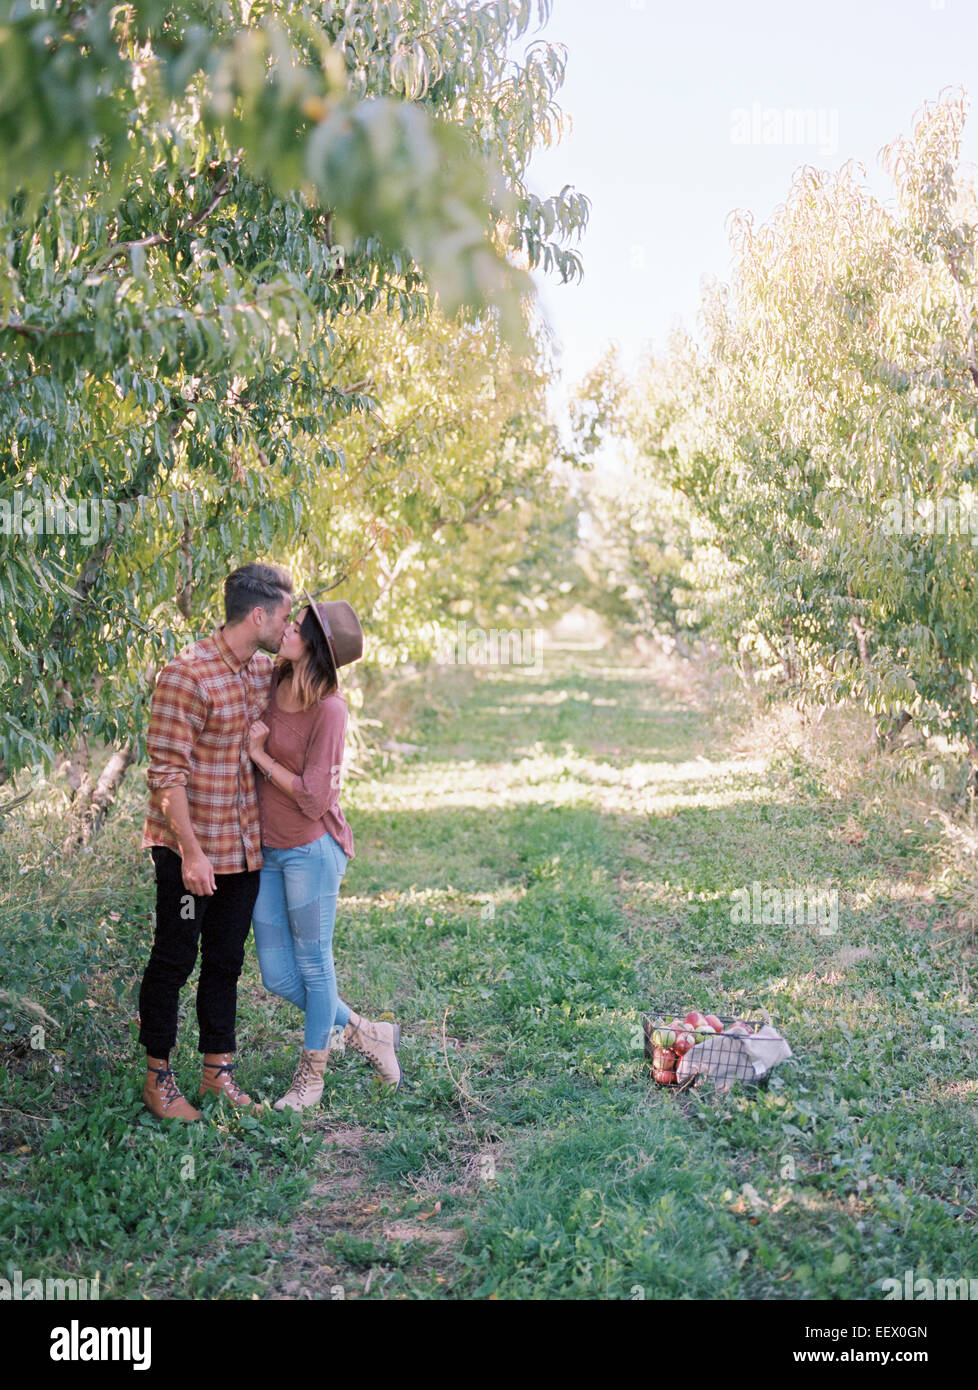 Huerto de Manzanas. Una pareja besándose. Foto de stock